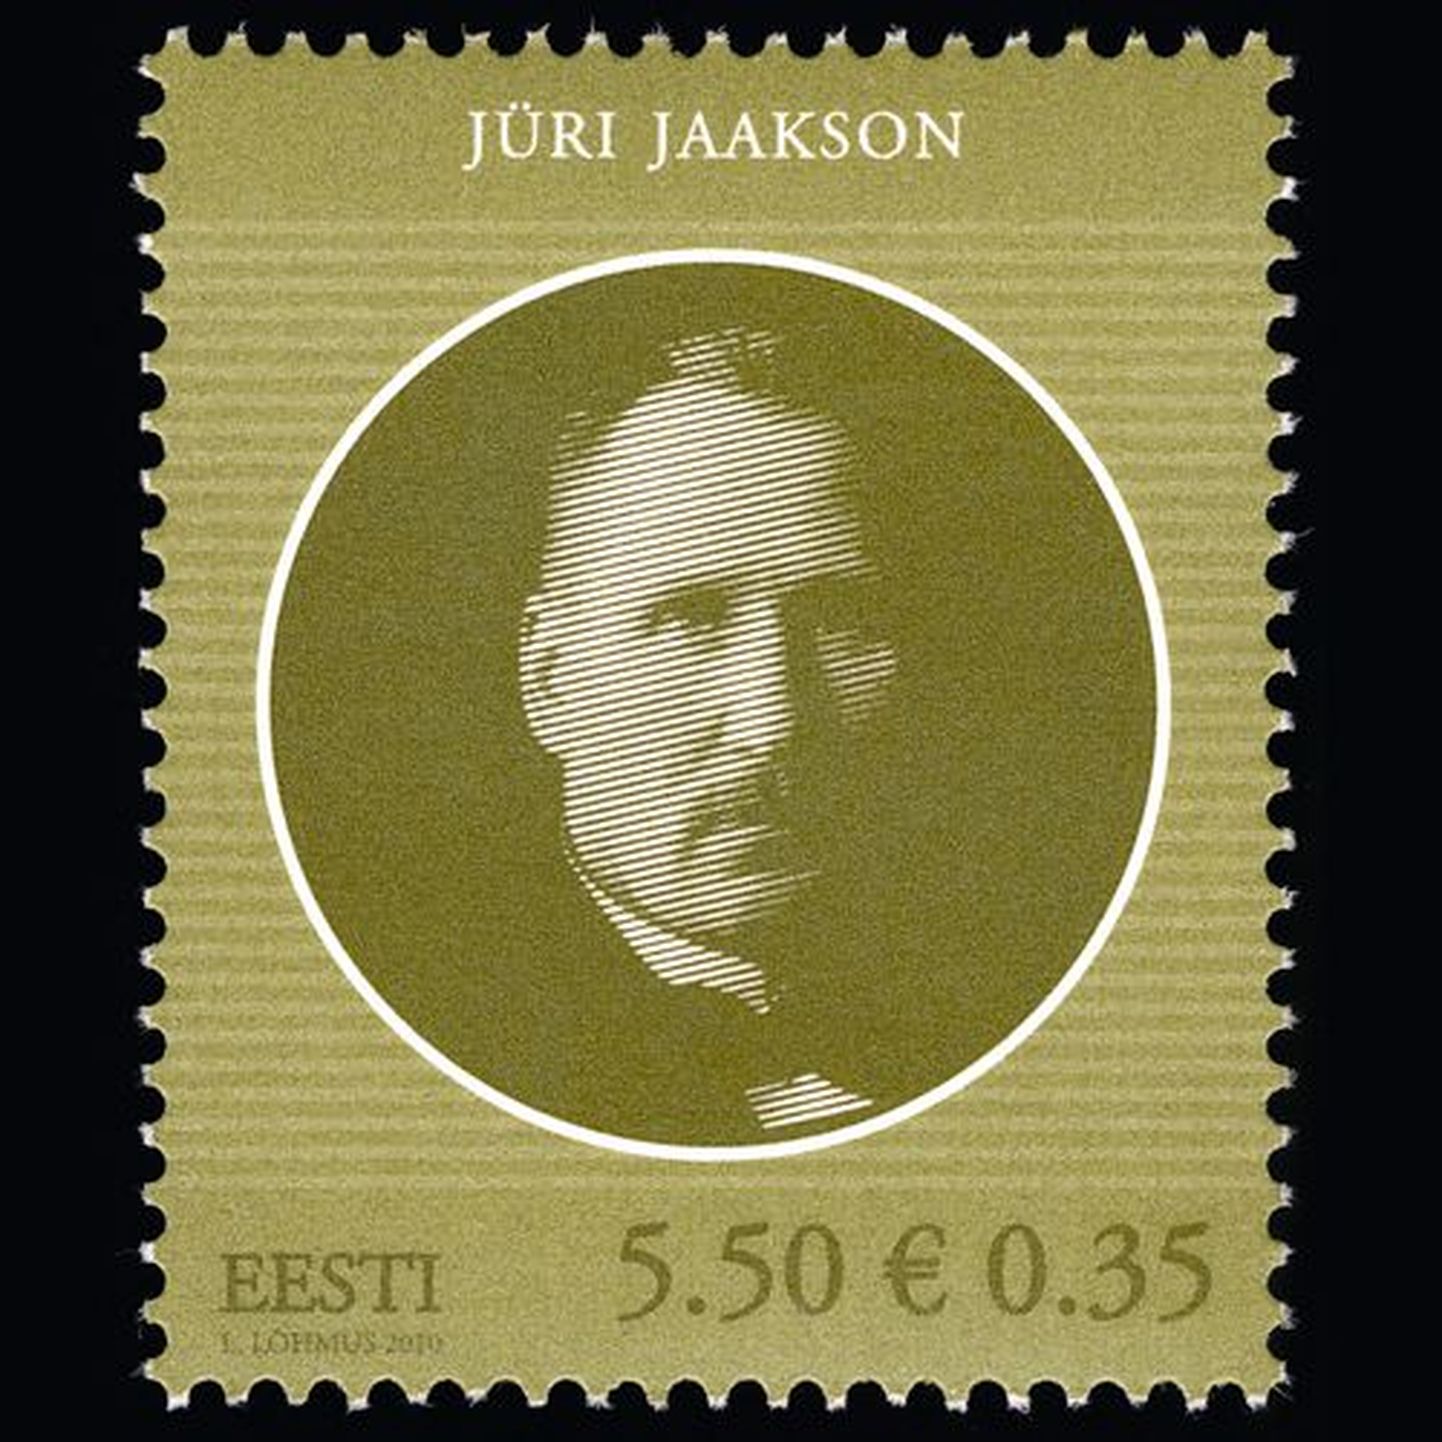 Jüri Jaaksonile pühendatud postmark.